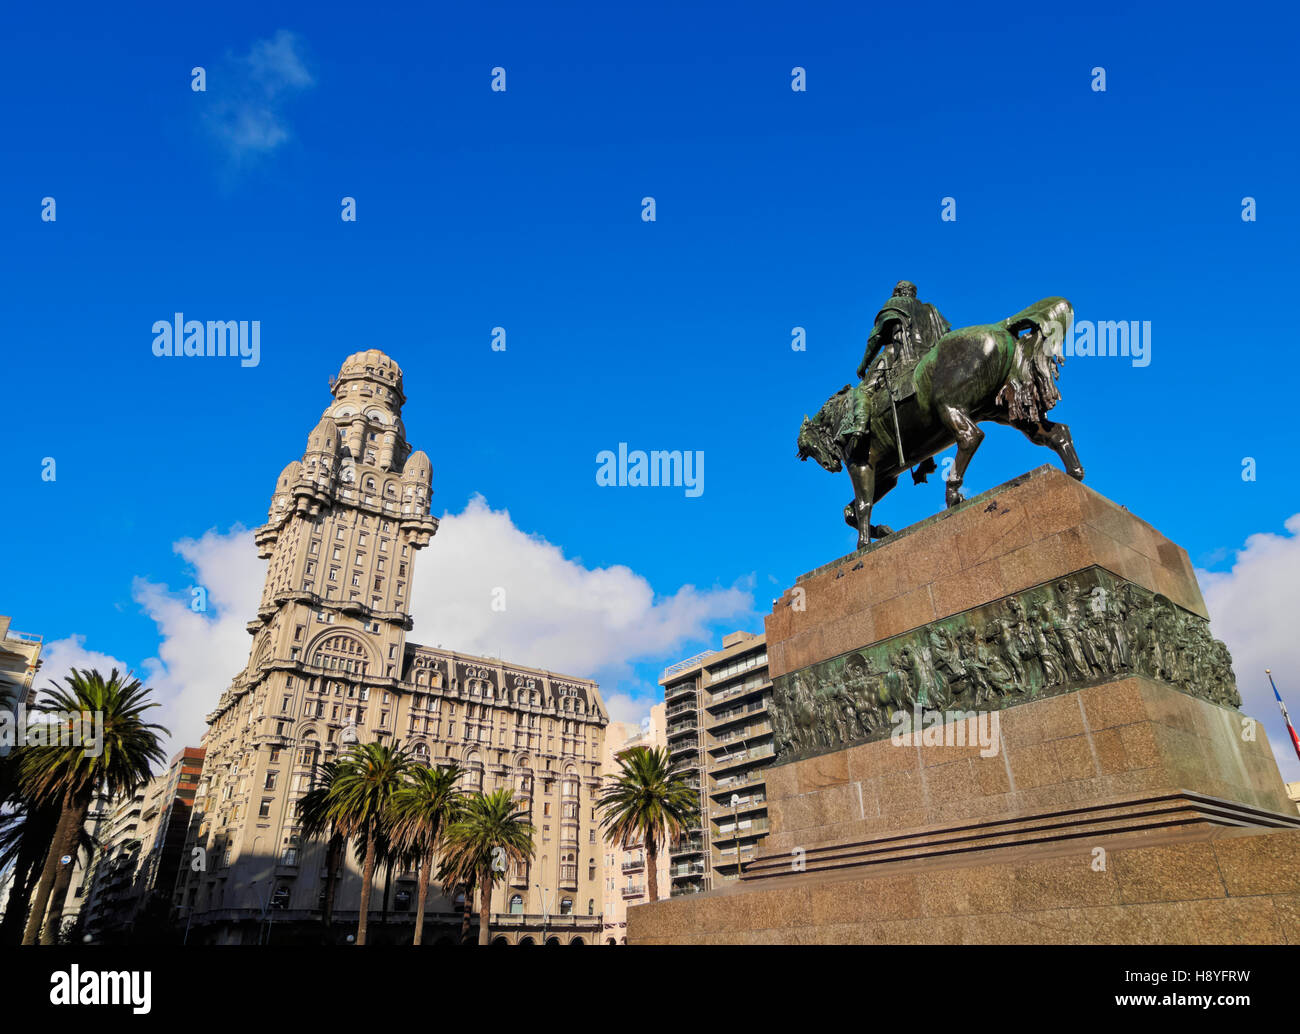 L'Uruguay, Montevideo, vue de la place de l'indépendance avec le monument d'Artigas et le palais Salvo. Banque D'Images